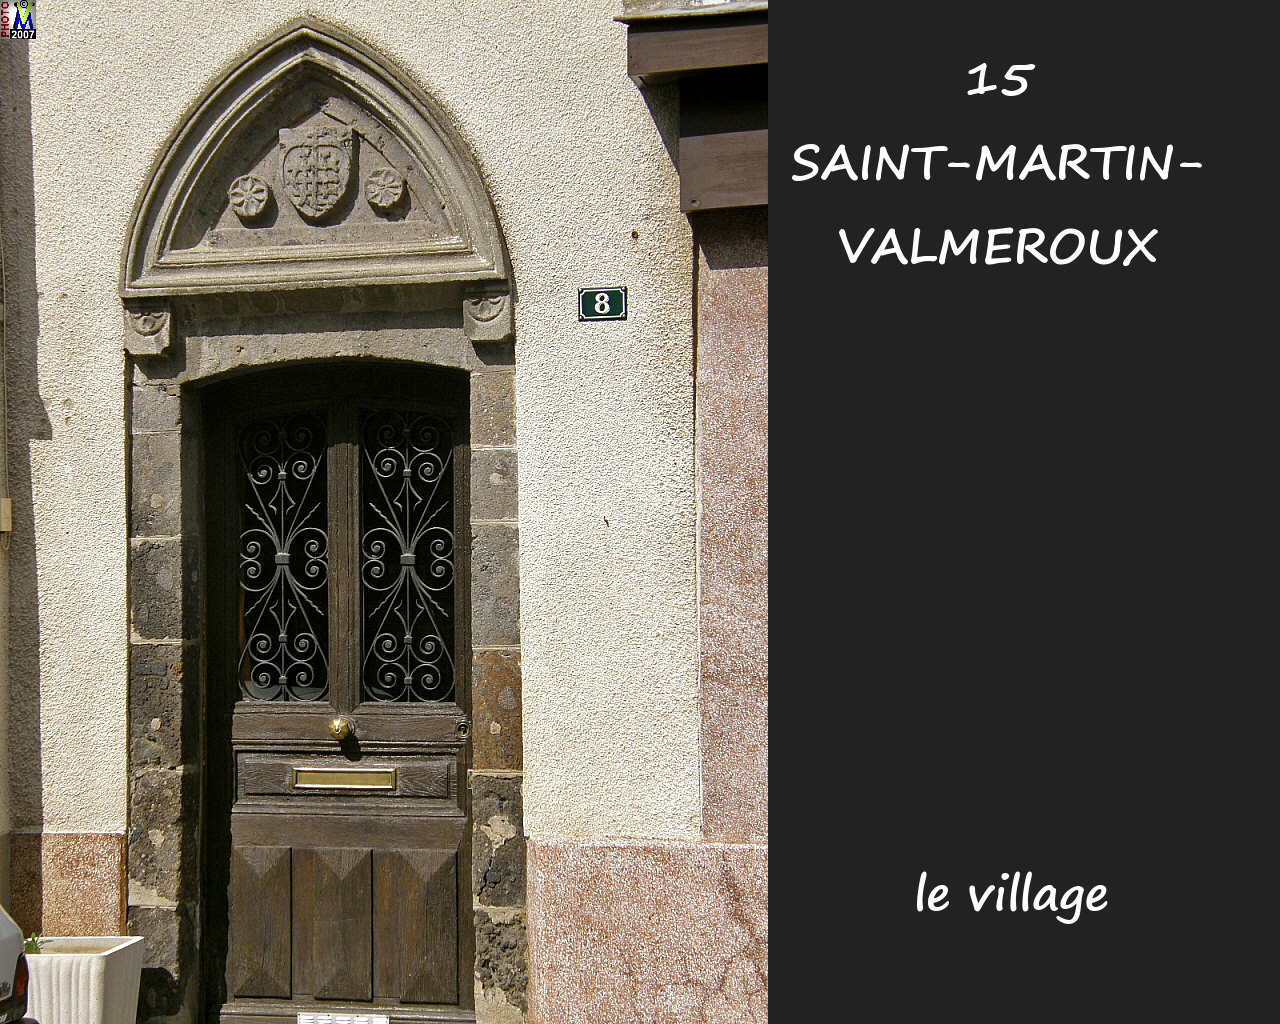 15StMARTIN-VALMEROUX_village_116.jpg